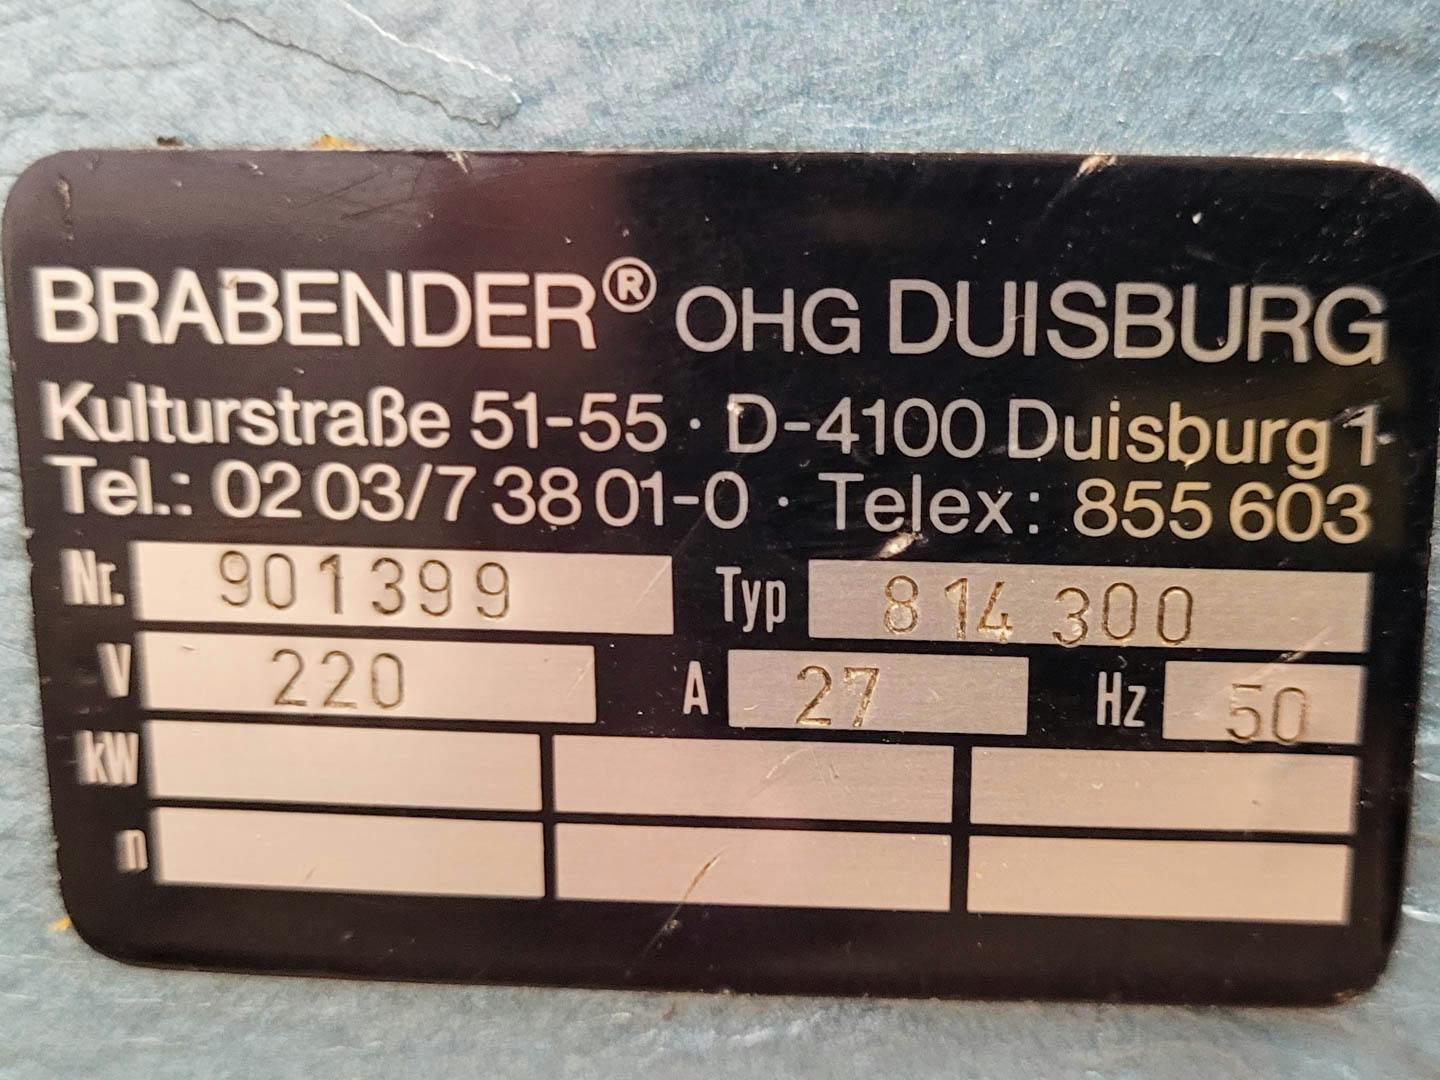 Brabender Plasti-Corder PL2000, Eurotherm Type 808 - Einschneckenextruder - image 11